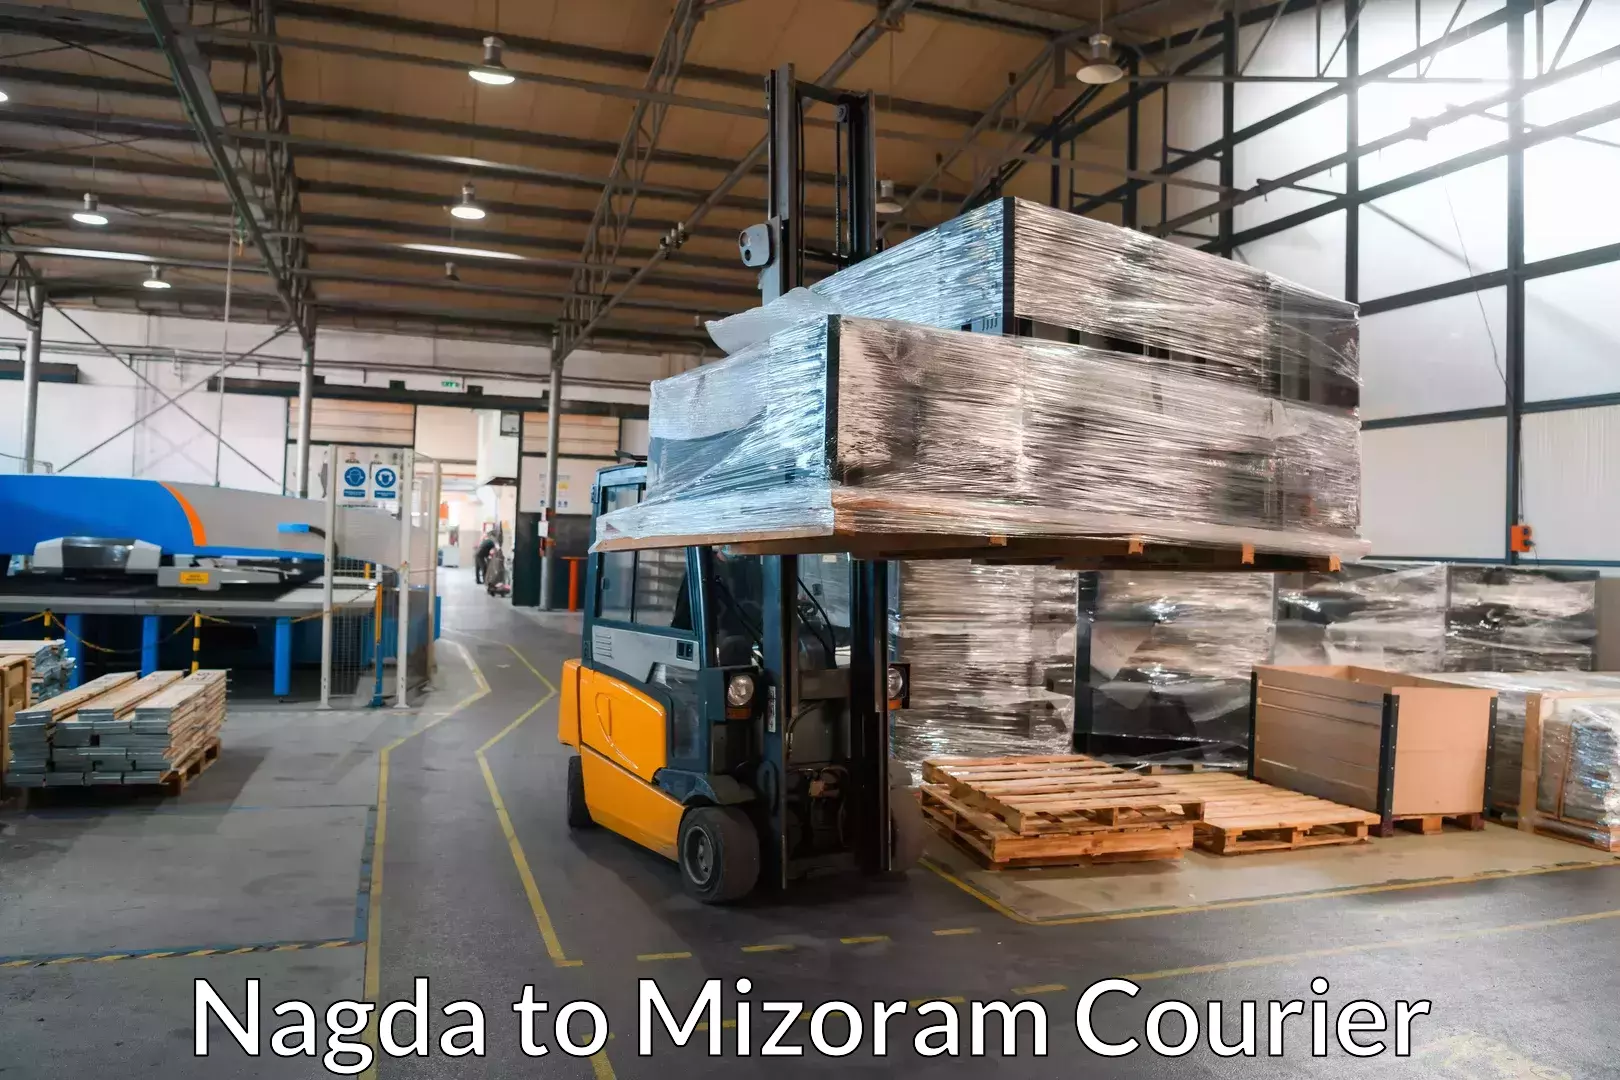 Furniture delivery service Nagda to Mizoram